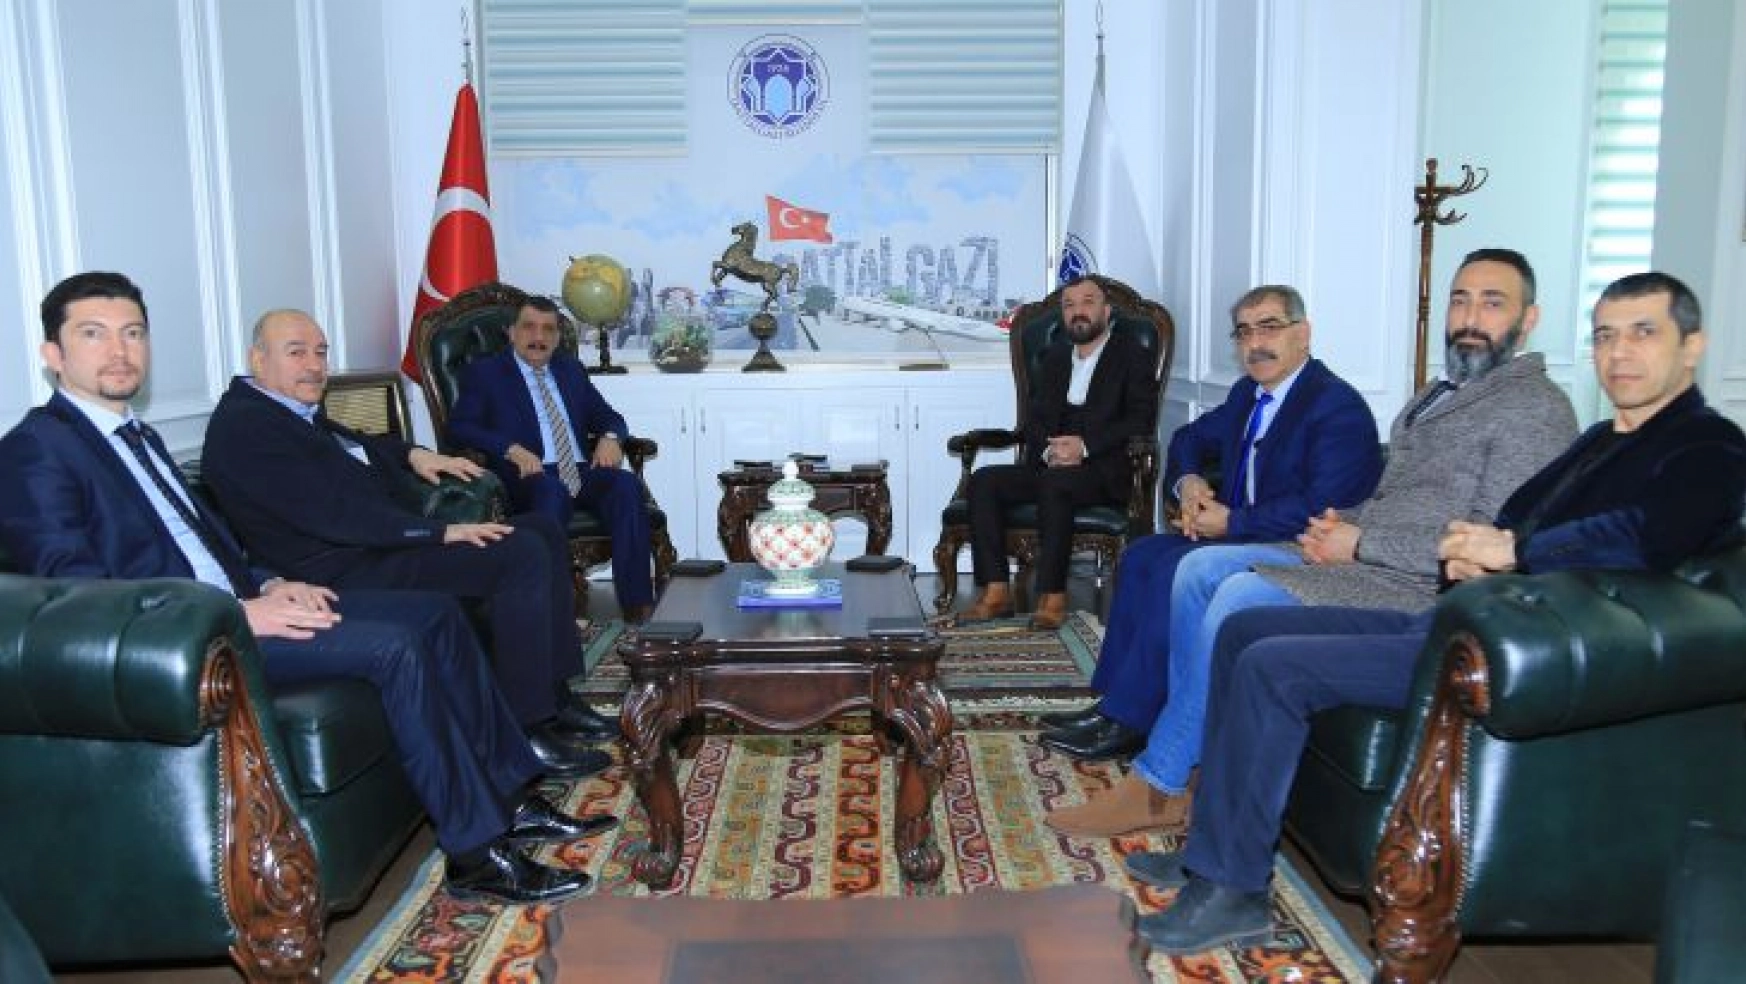 Ortak Değer Malatya Derneği Başkanı Kılıç, Başkan Gürkan'ı Ziyaret Etti